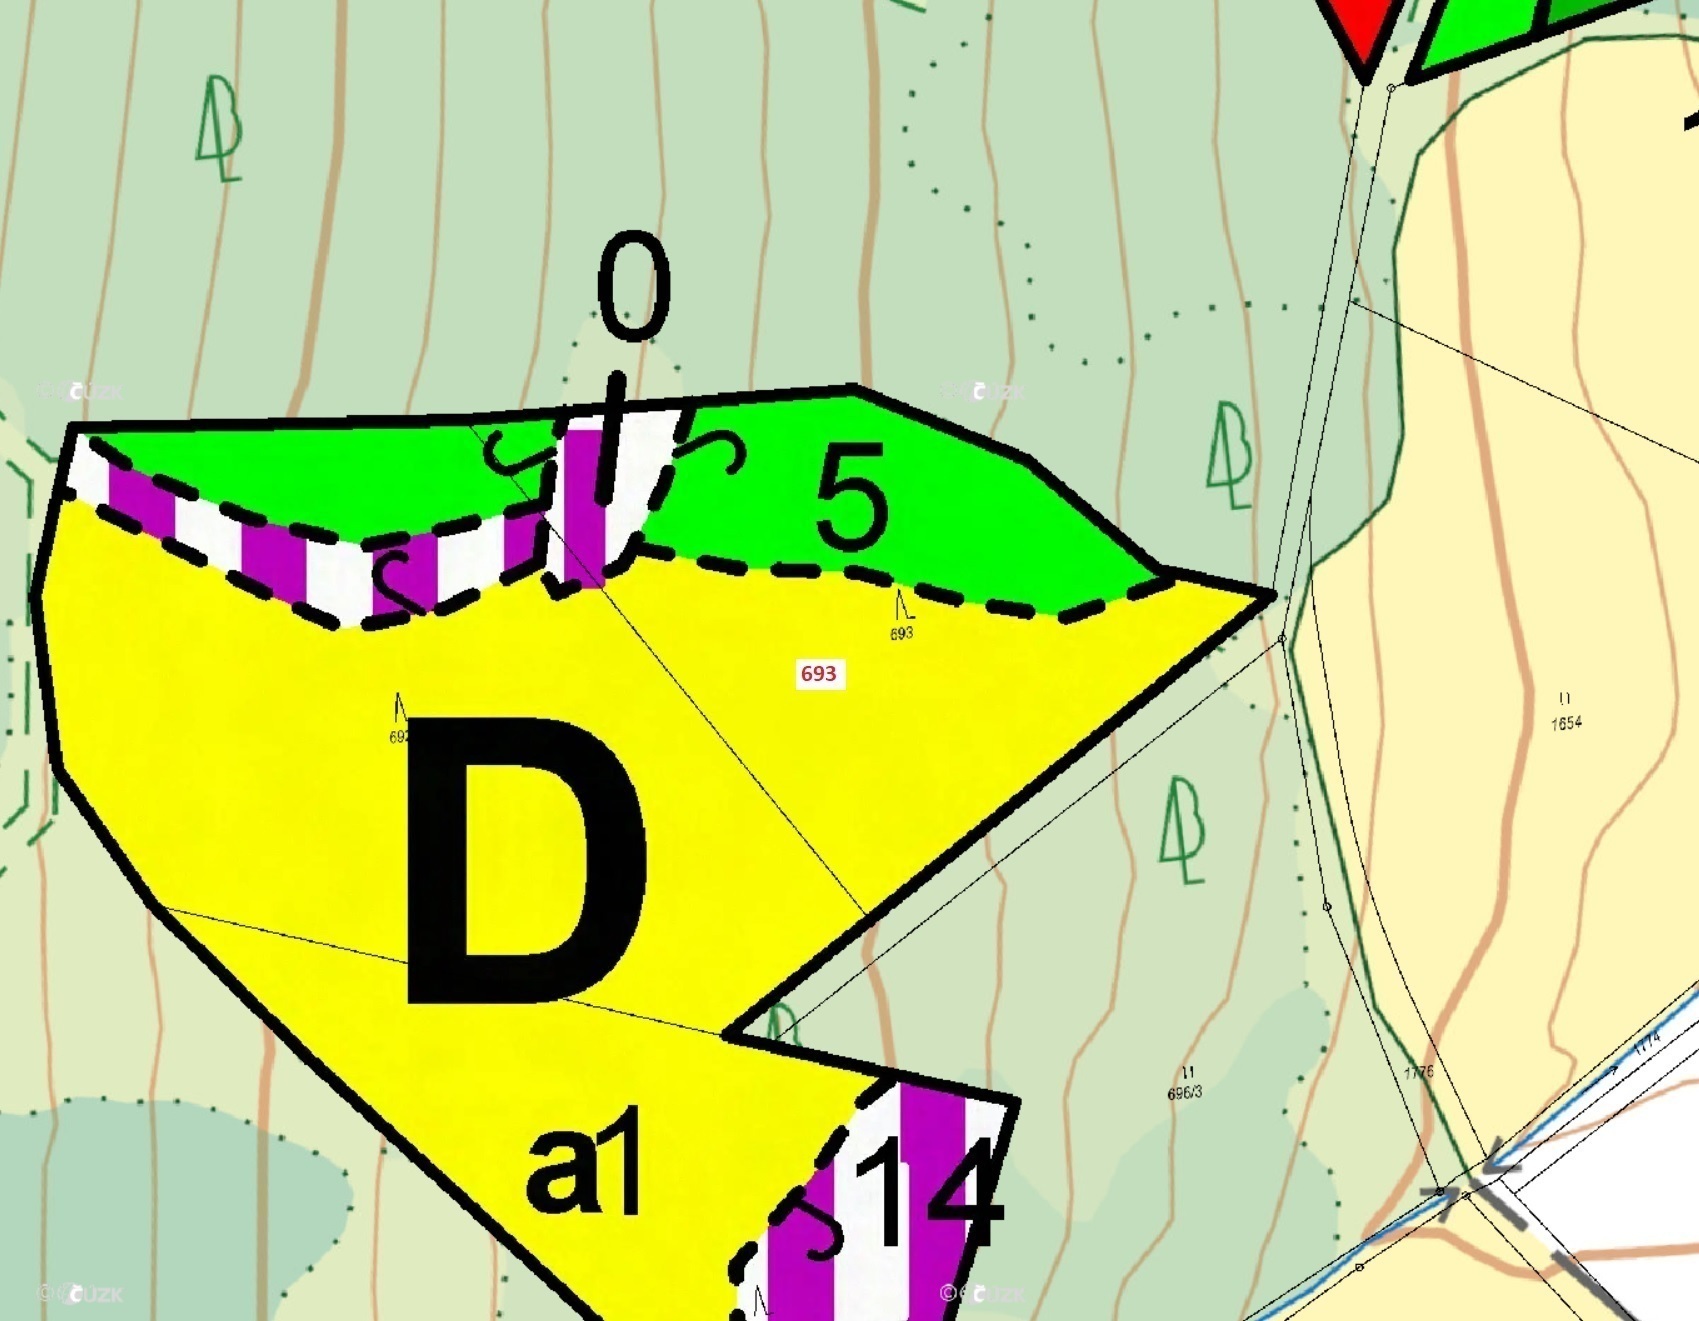 Lesní pozemek o výměře 3 949 m2, podíl 1/1, k.ú. Deblov, okres  Chrudim